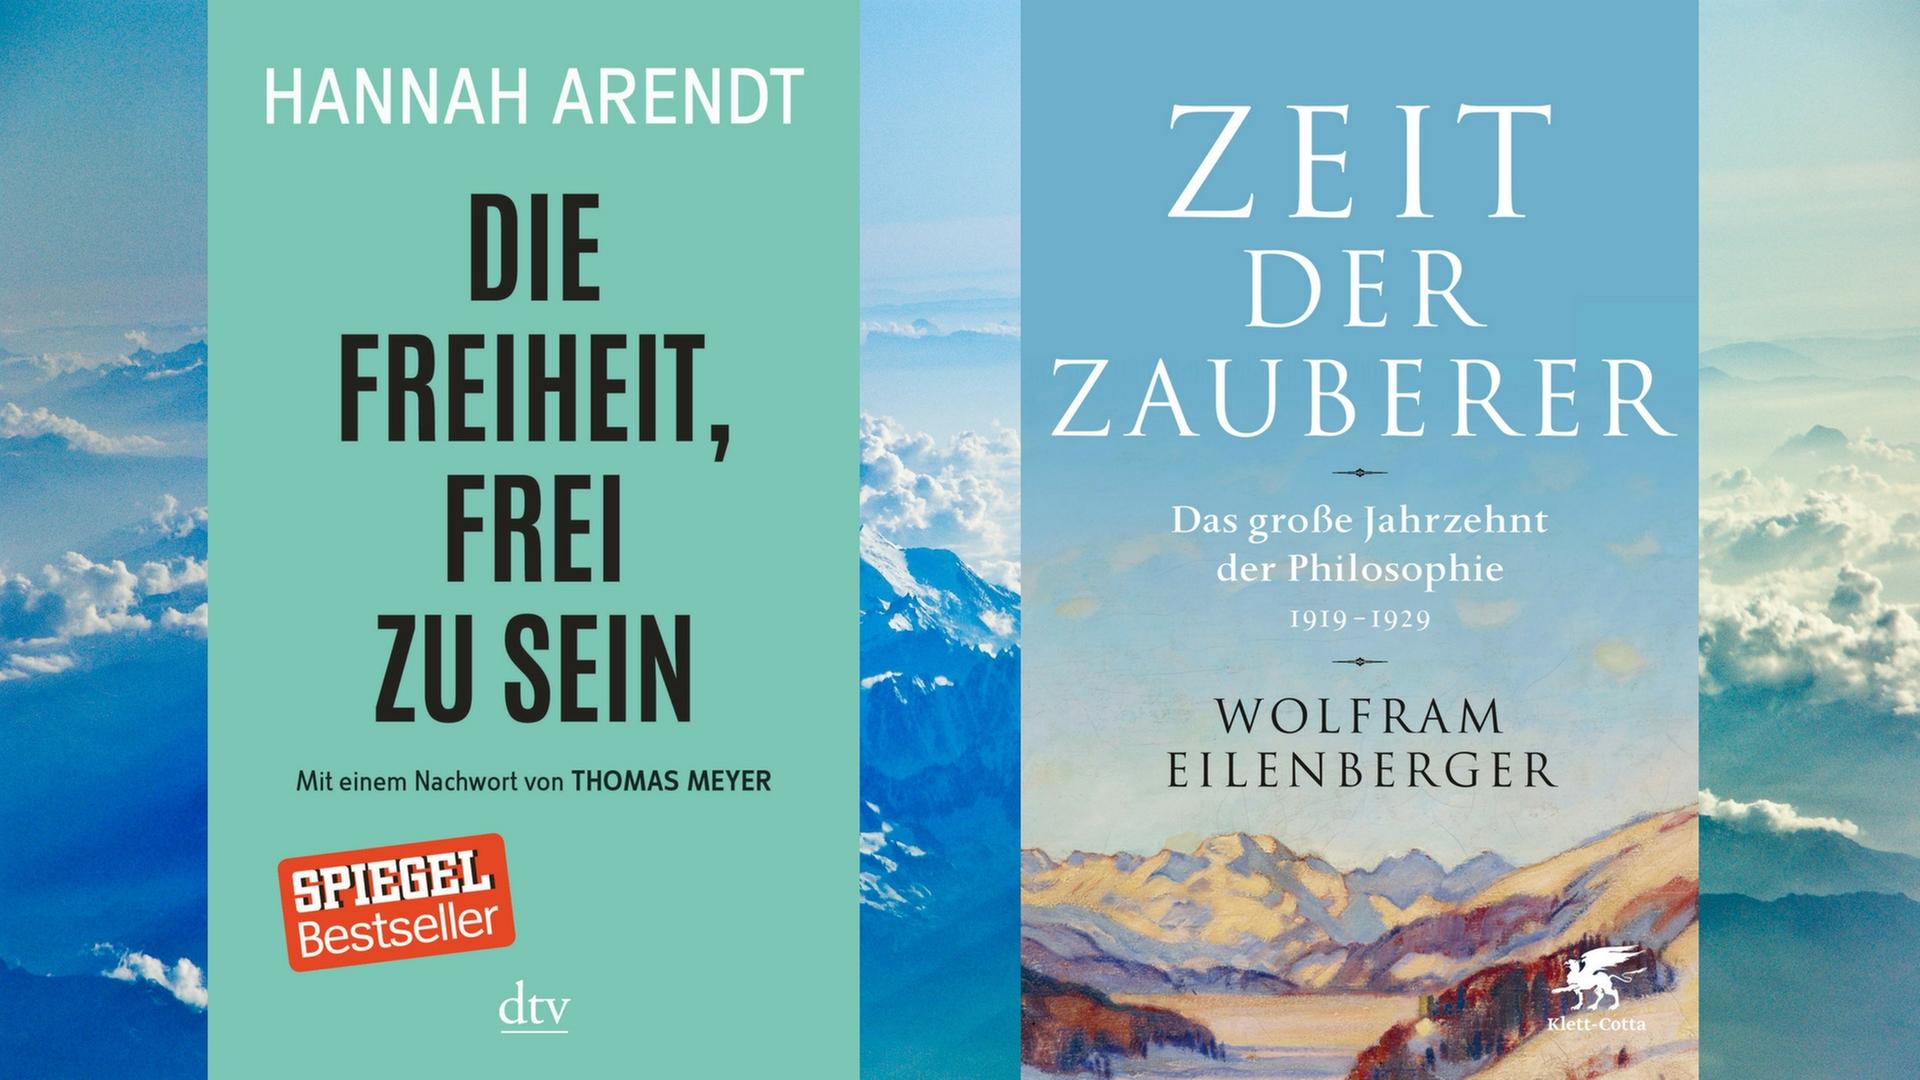 Hannah Arendt: Die Freiheit, frei zu sein; Wolfram Eilenberger: Zeit der Zauberer